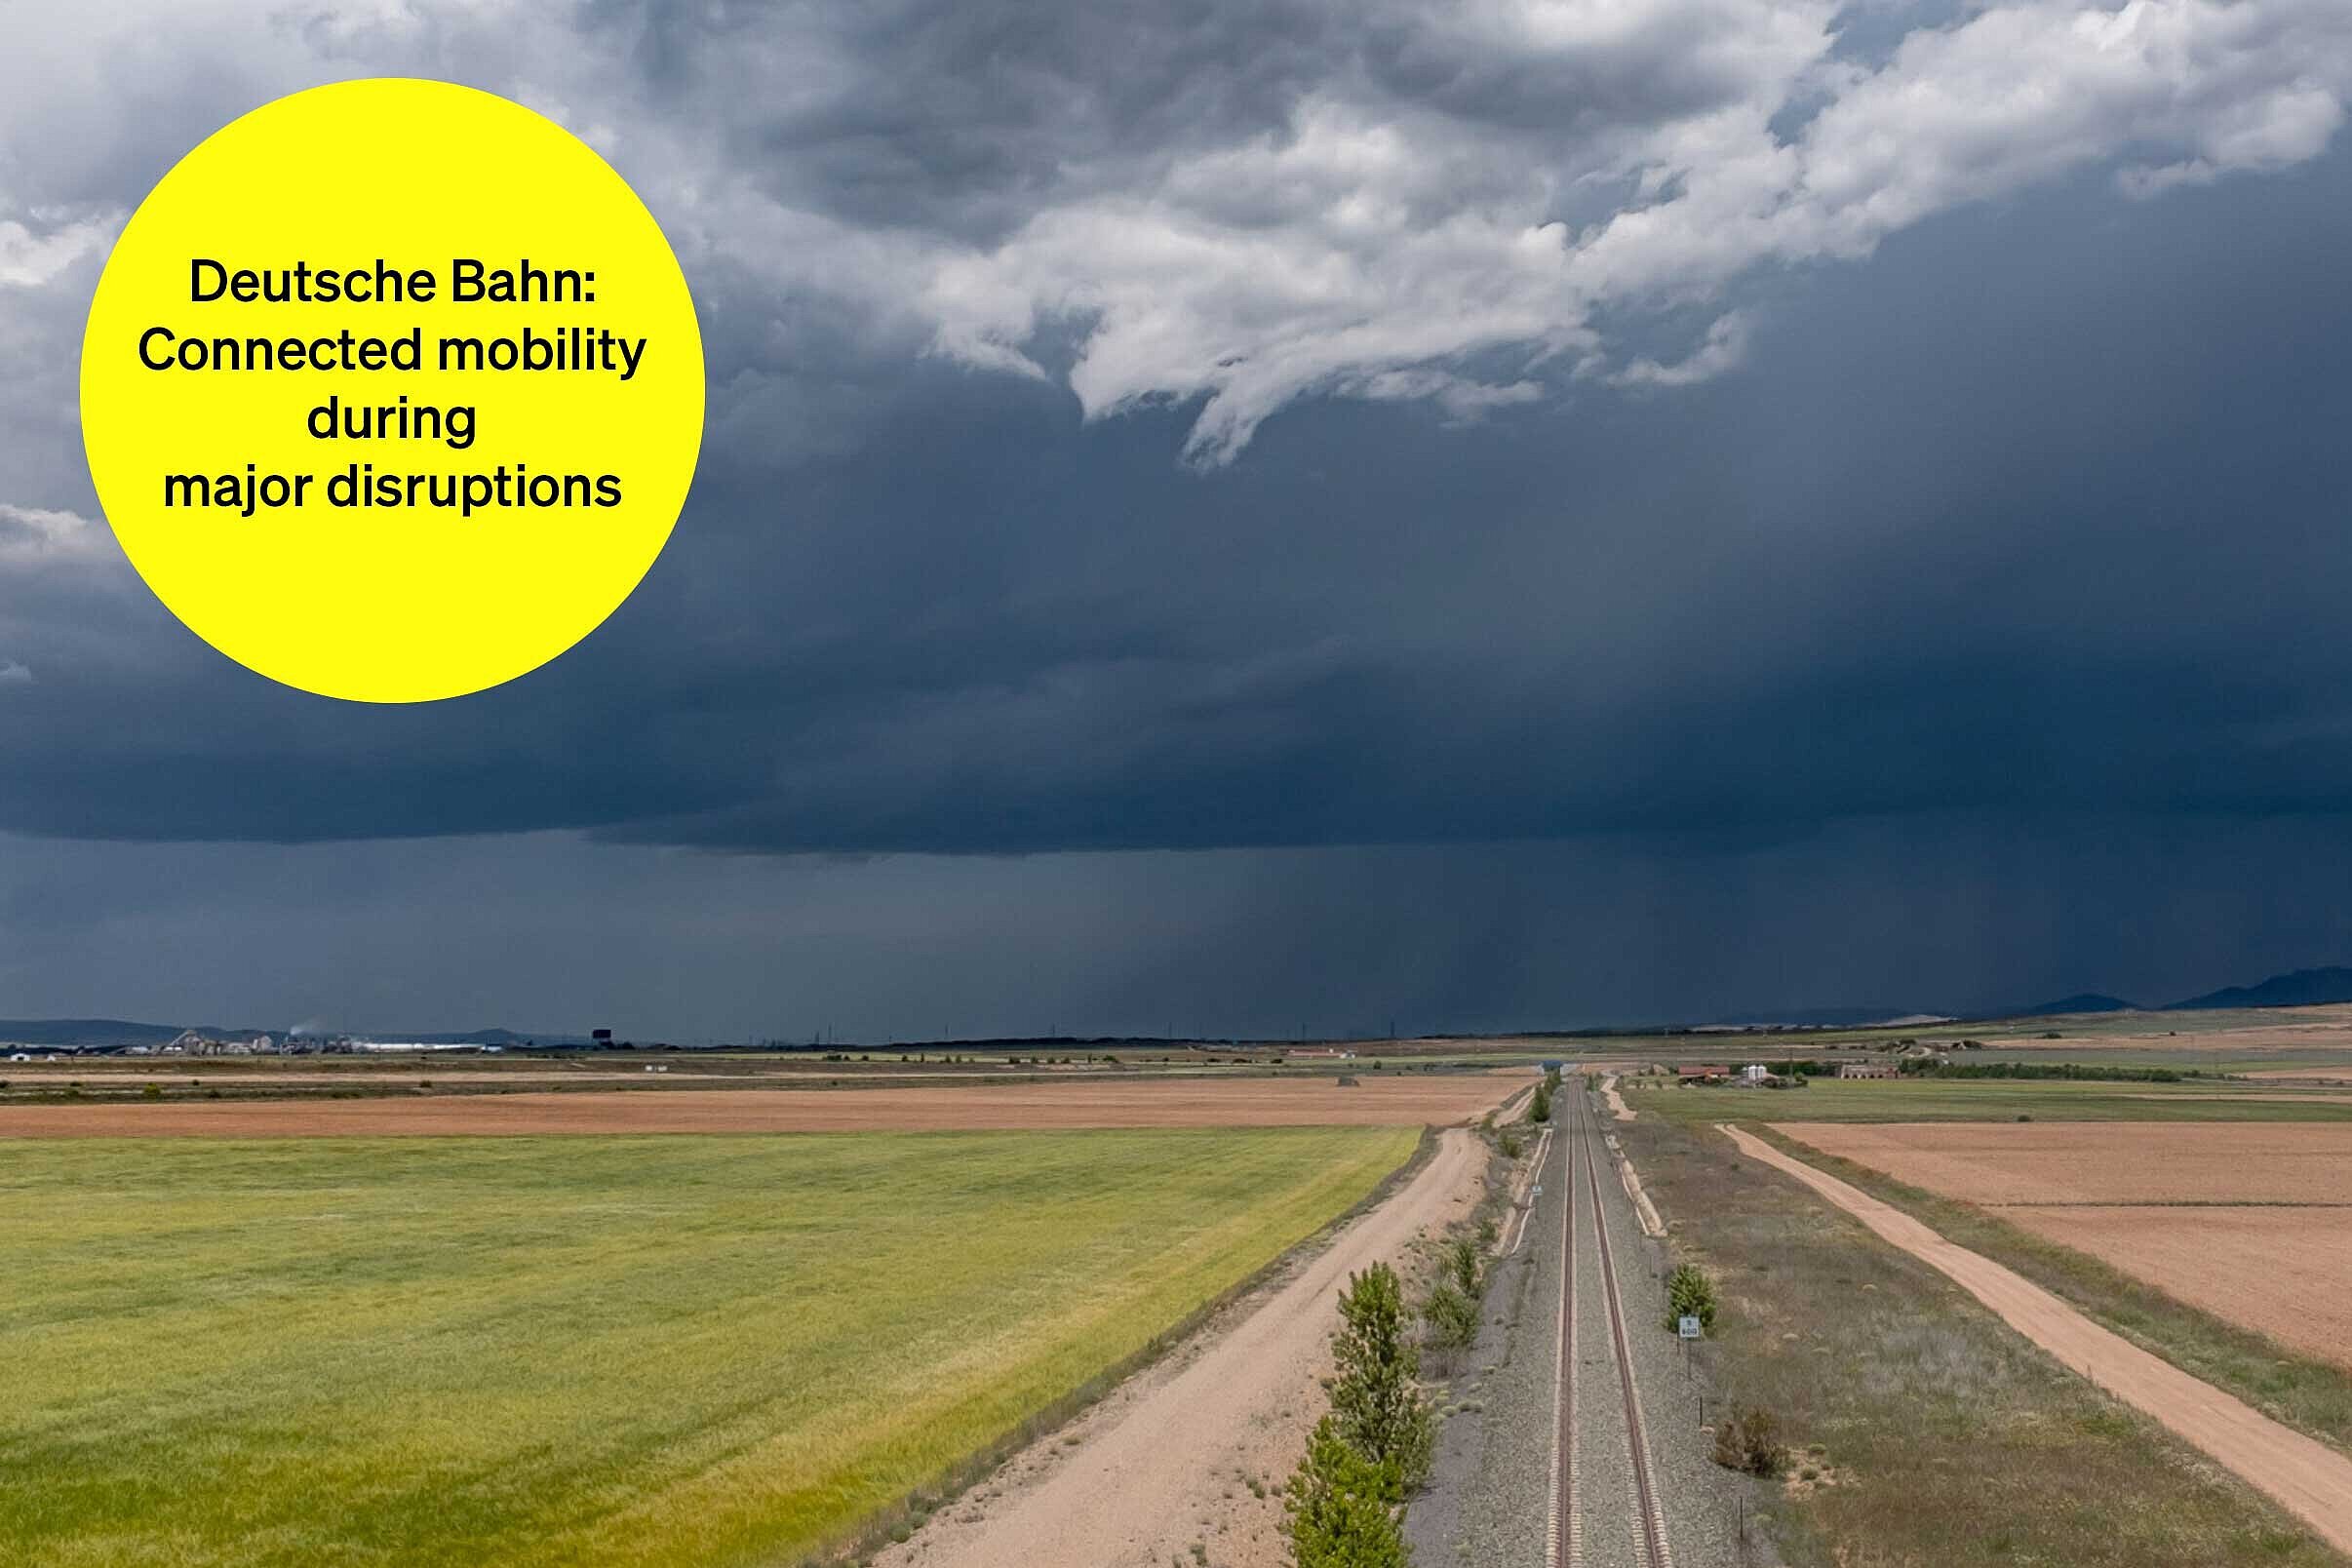 Railroad tracks between fields in cloudy weather - text module in round tile: Deutsche Bahn Mobilität vernetzt: Multimodal major disruption information